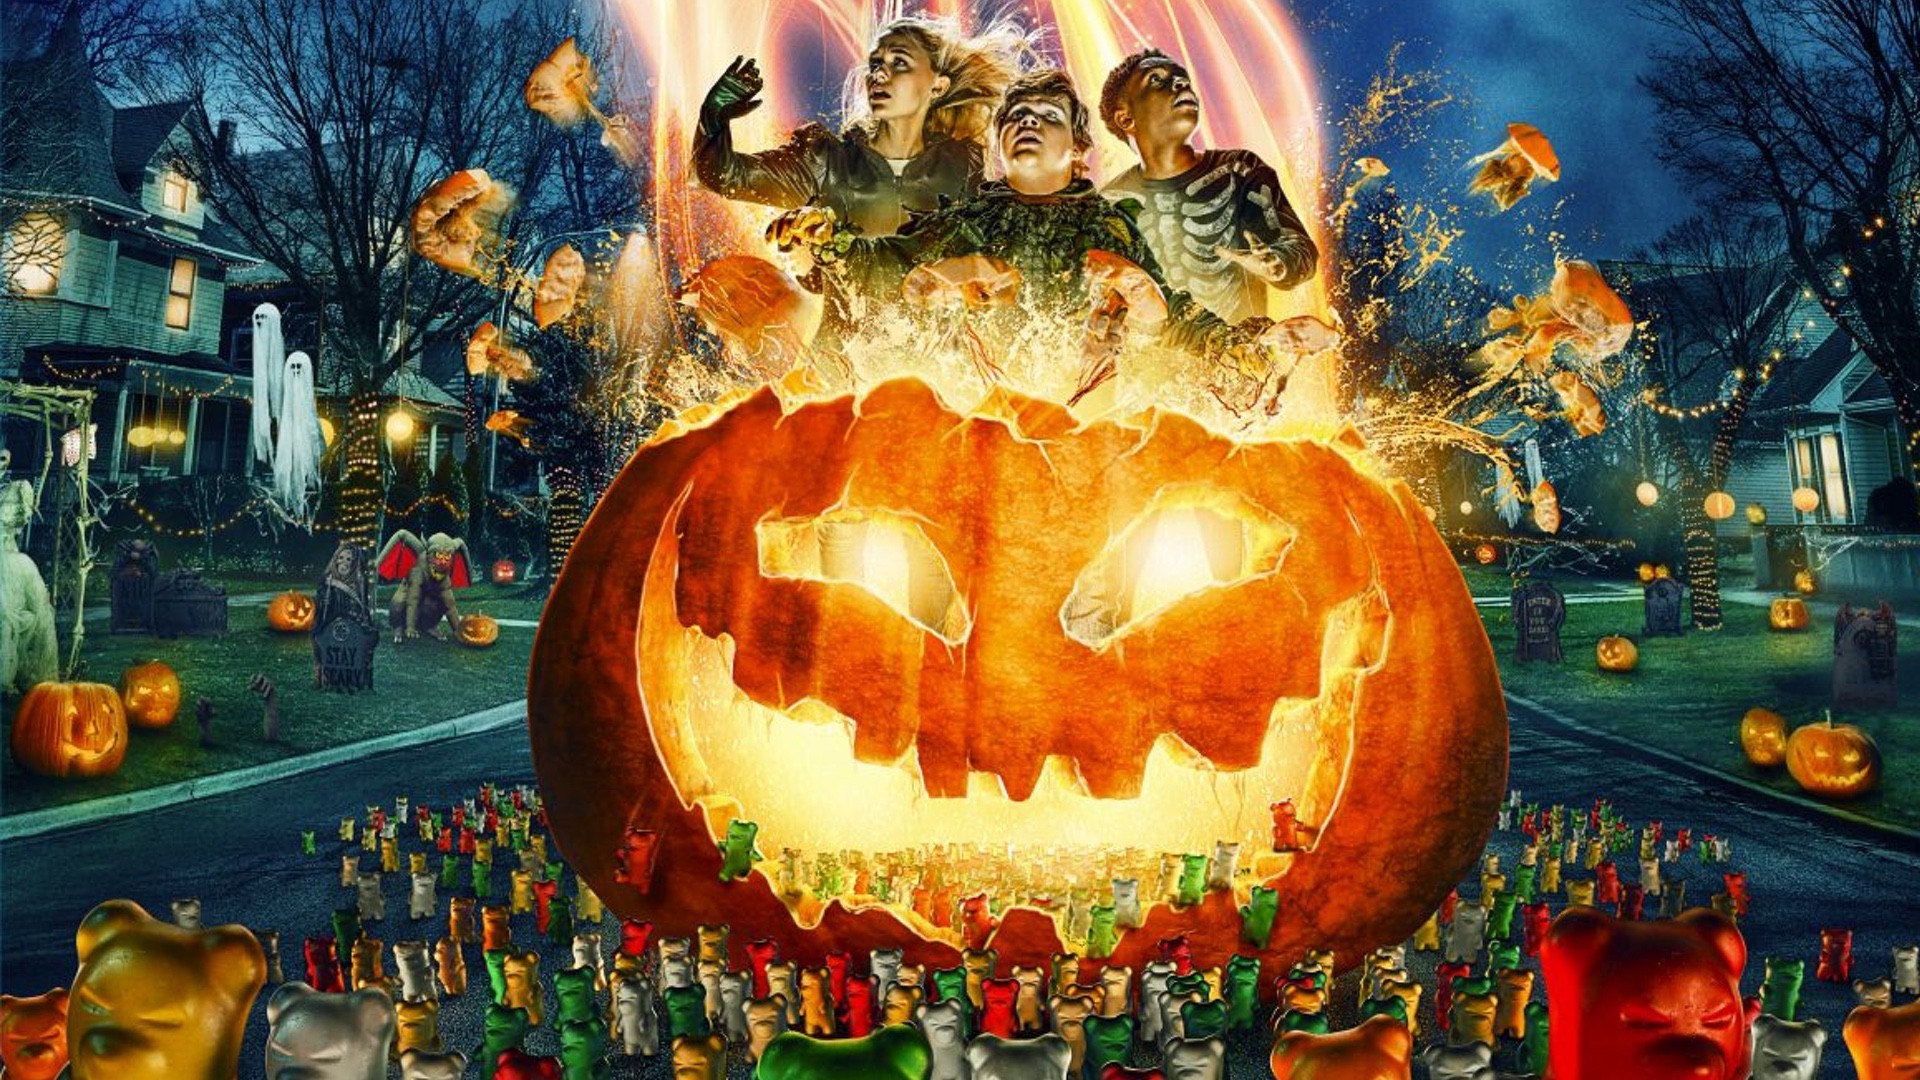 Descubra quais filmes de Halloween fizeram parte da sua infância!